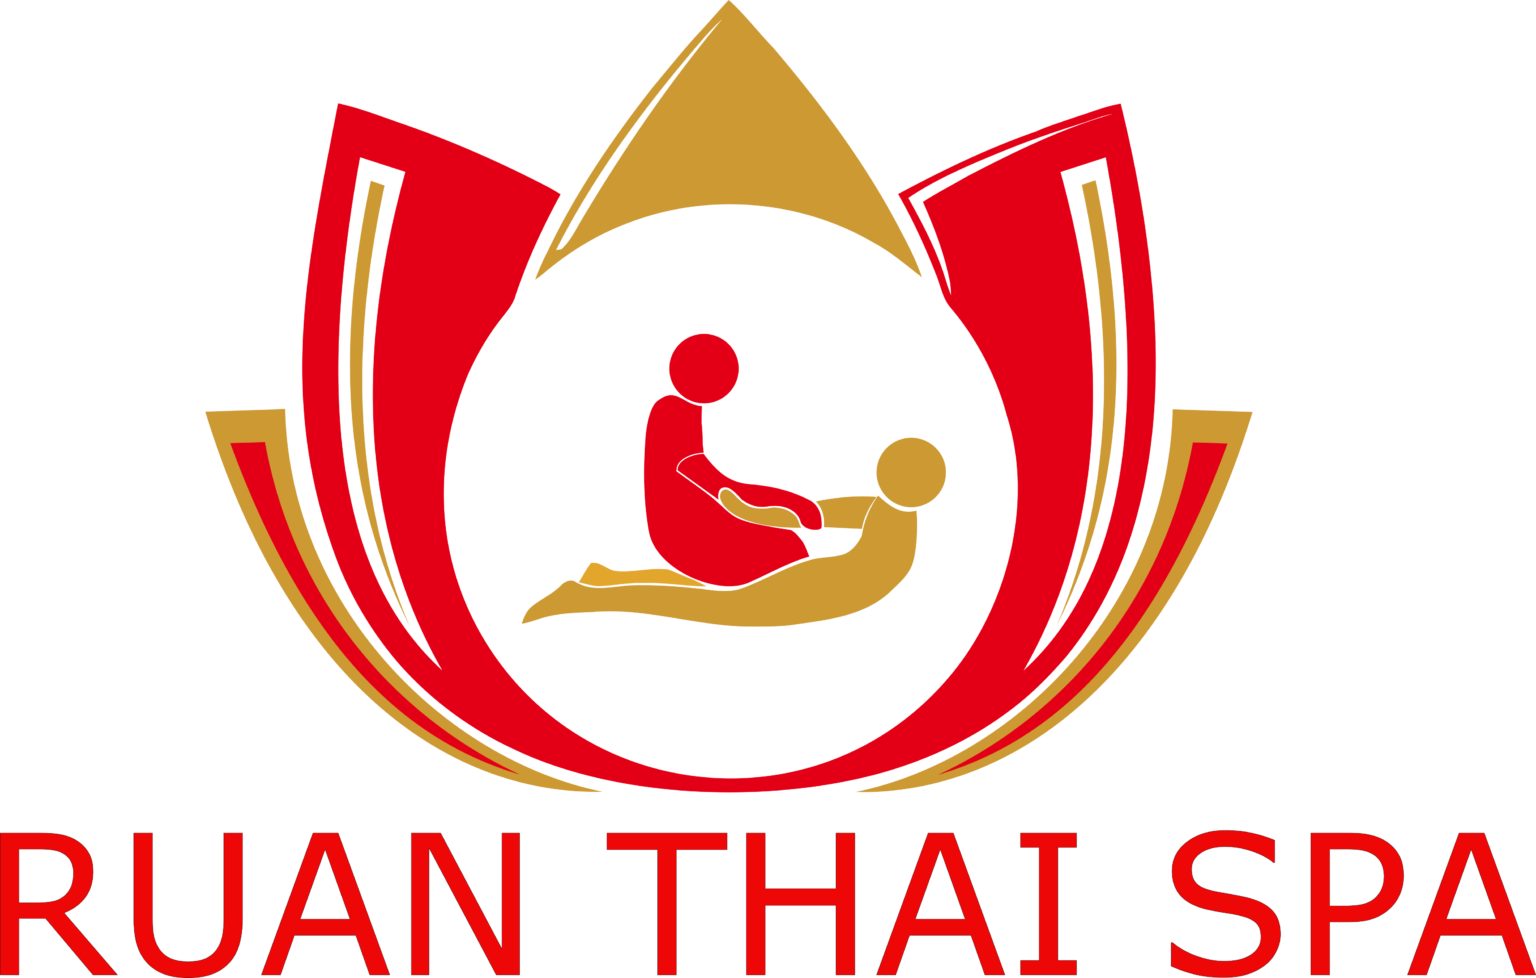 Ruan Thai Spa – Logos Download